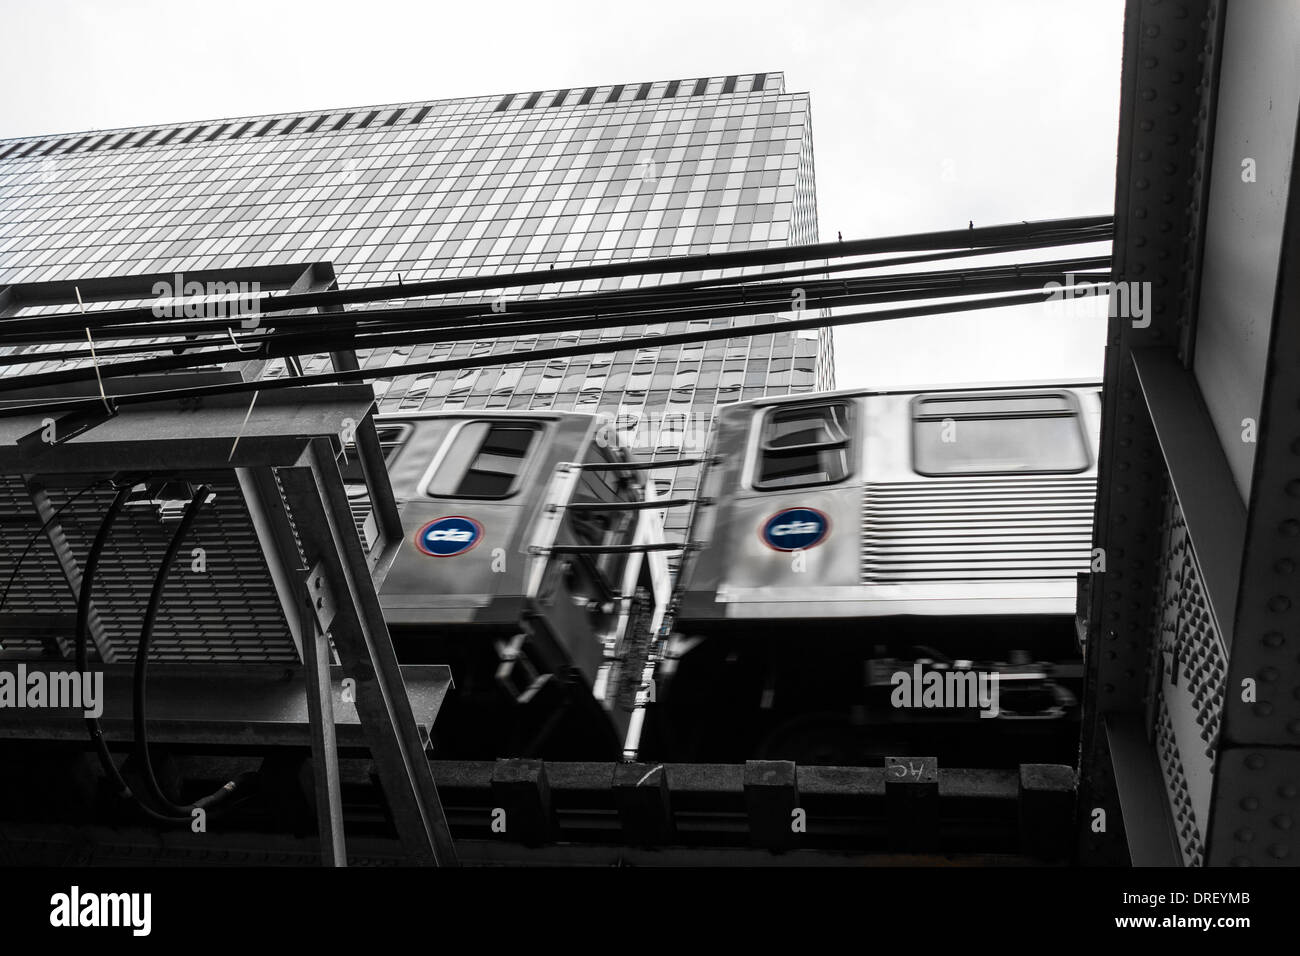 Cta elevato treno della metropolitana di Chicago STATI UNITI D'AMERICA Foto Stock